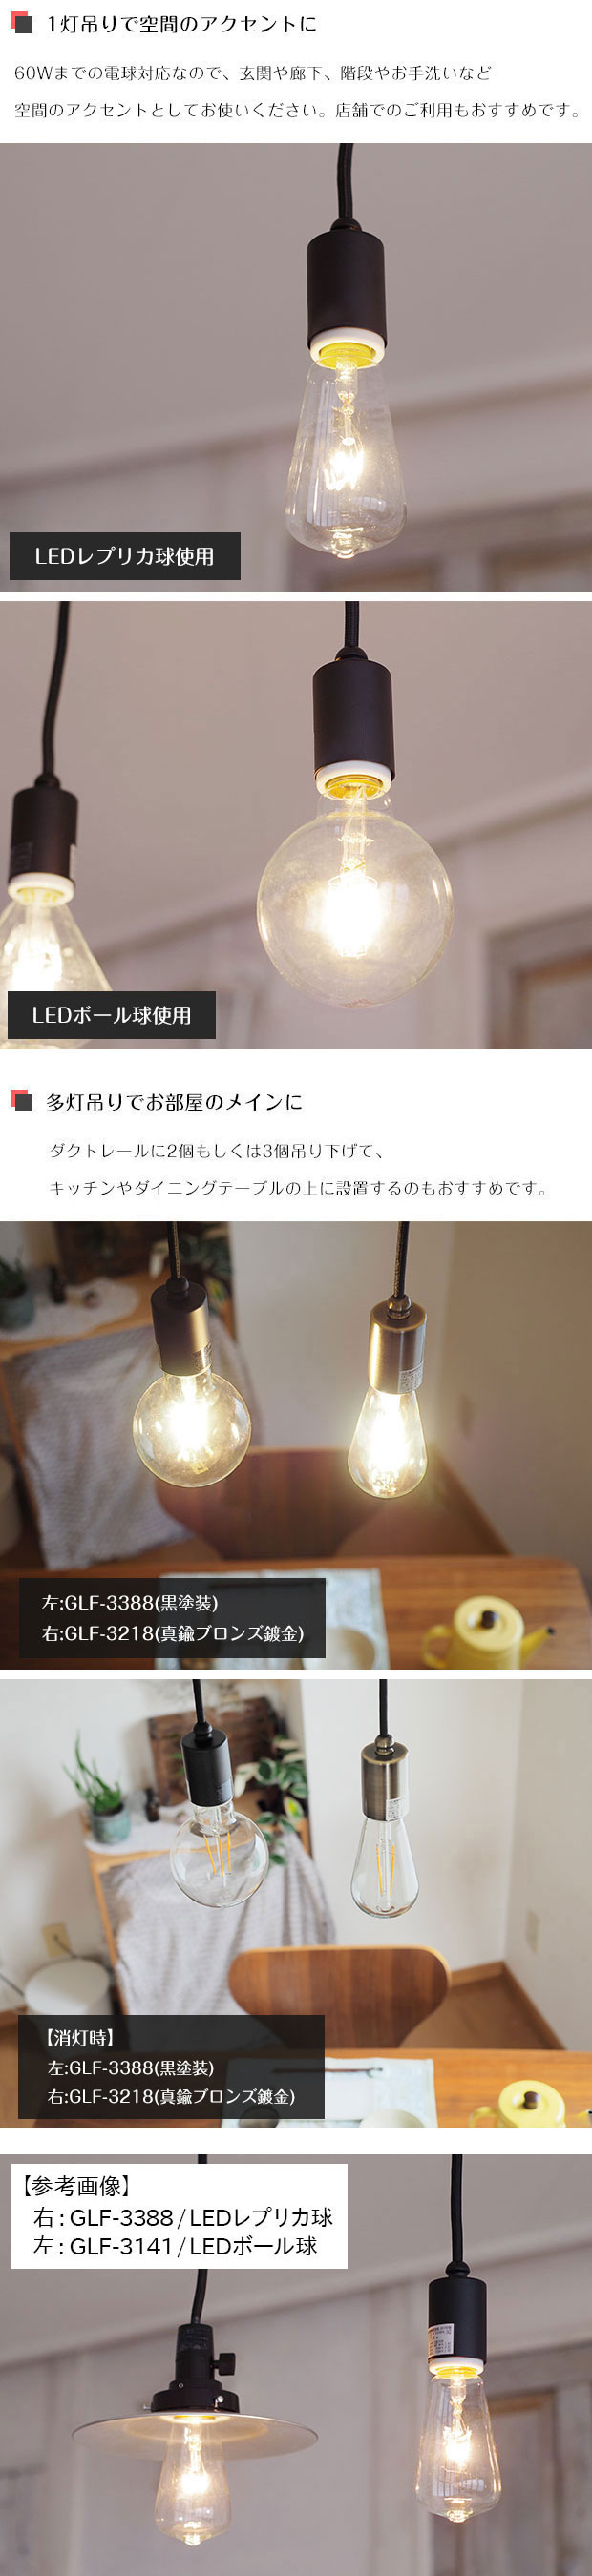 【ドシリーズ】 後藤照明 GLF-3520BK 浅盛ガラスセードシリーズ LEDランプ付 調光対応 GLF-3520BK